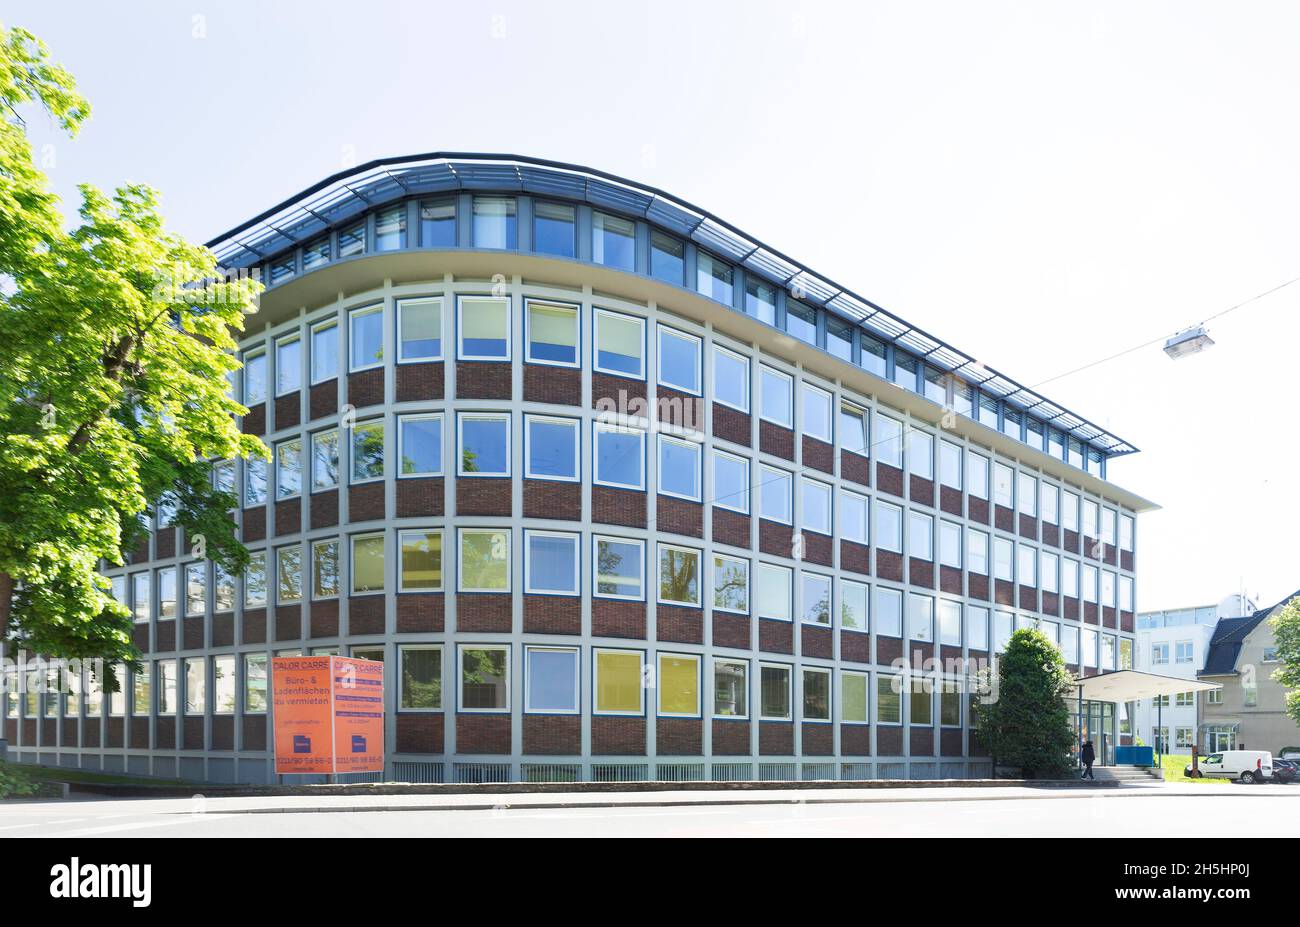 Calor-Emag administration building, post-war modernism, Ratingen, Rhineland, North Rhine-Westphalia, Germany Stock Photo